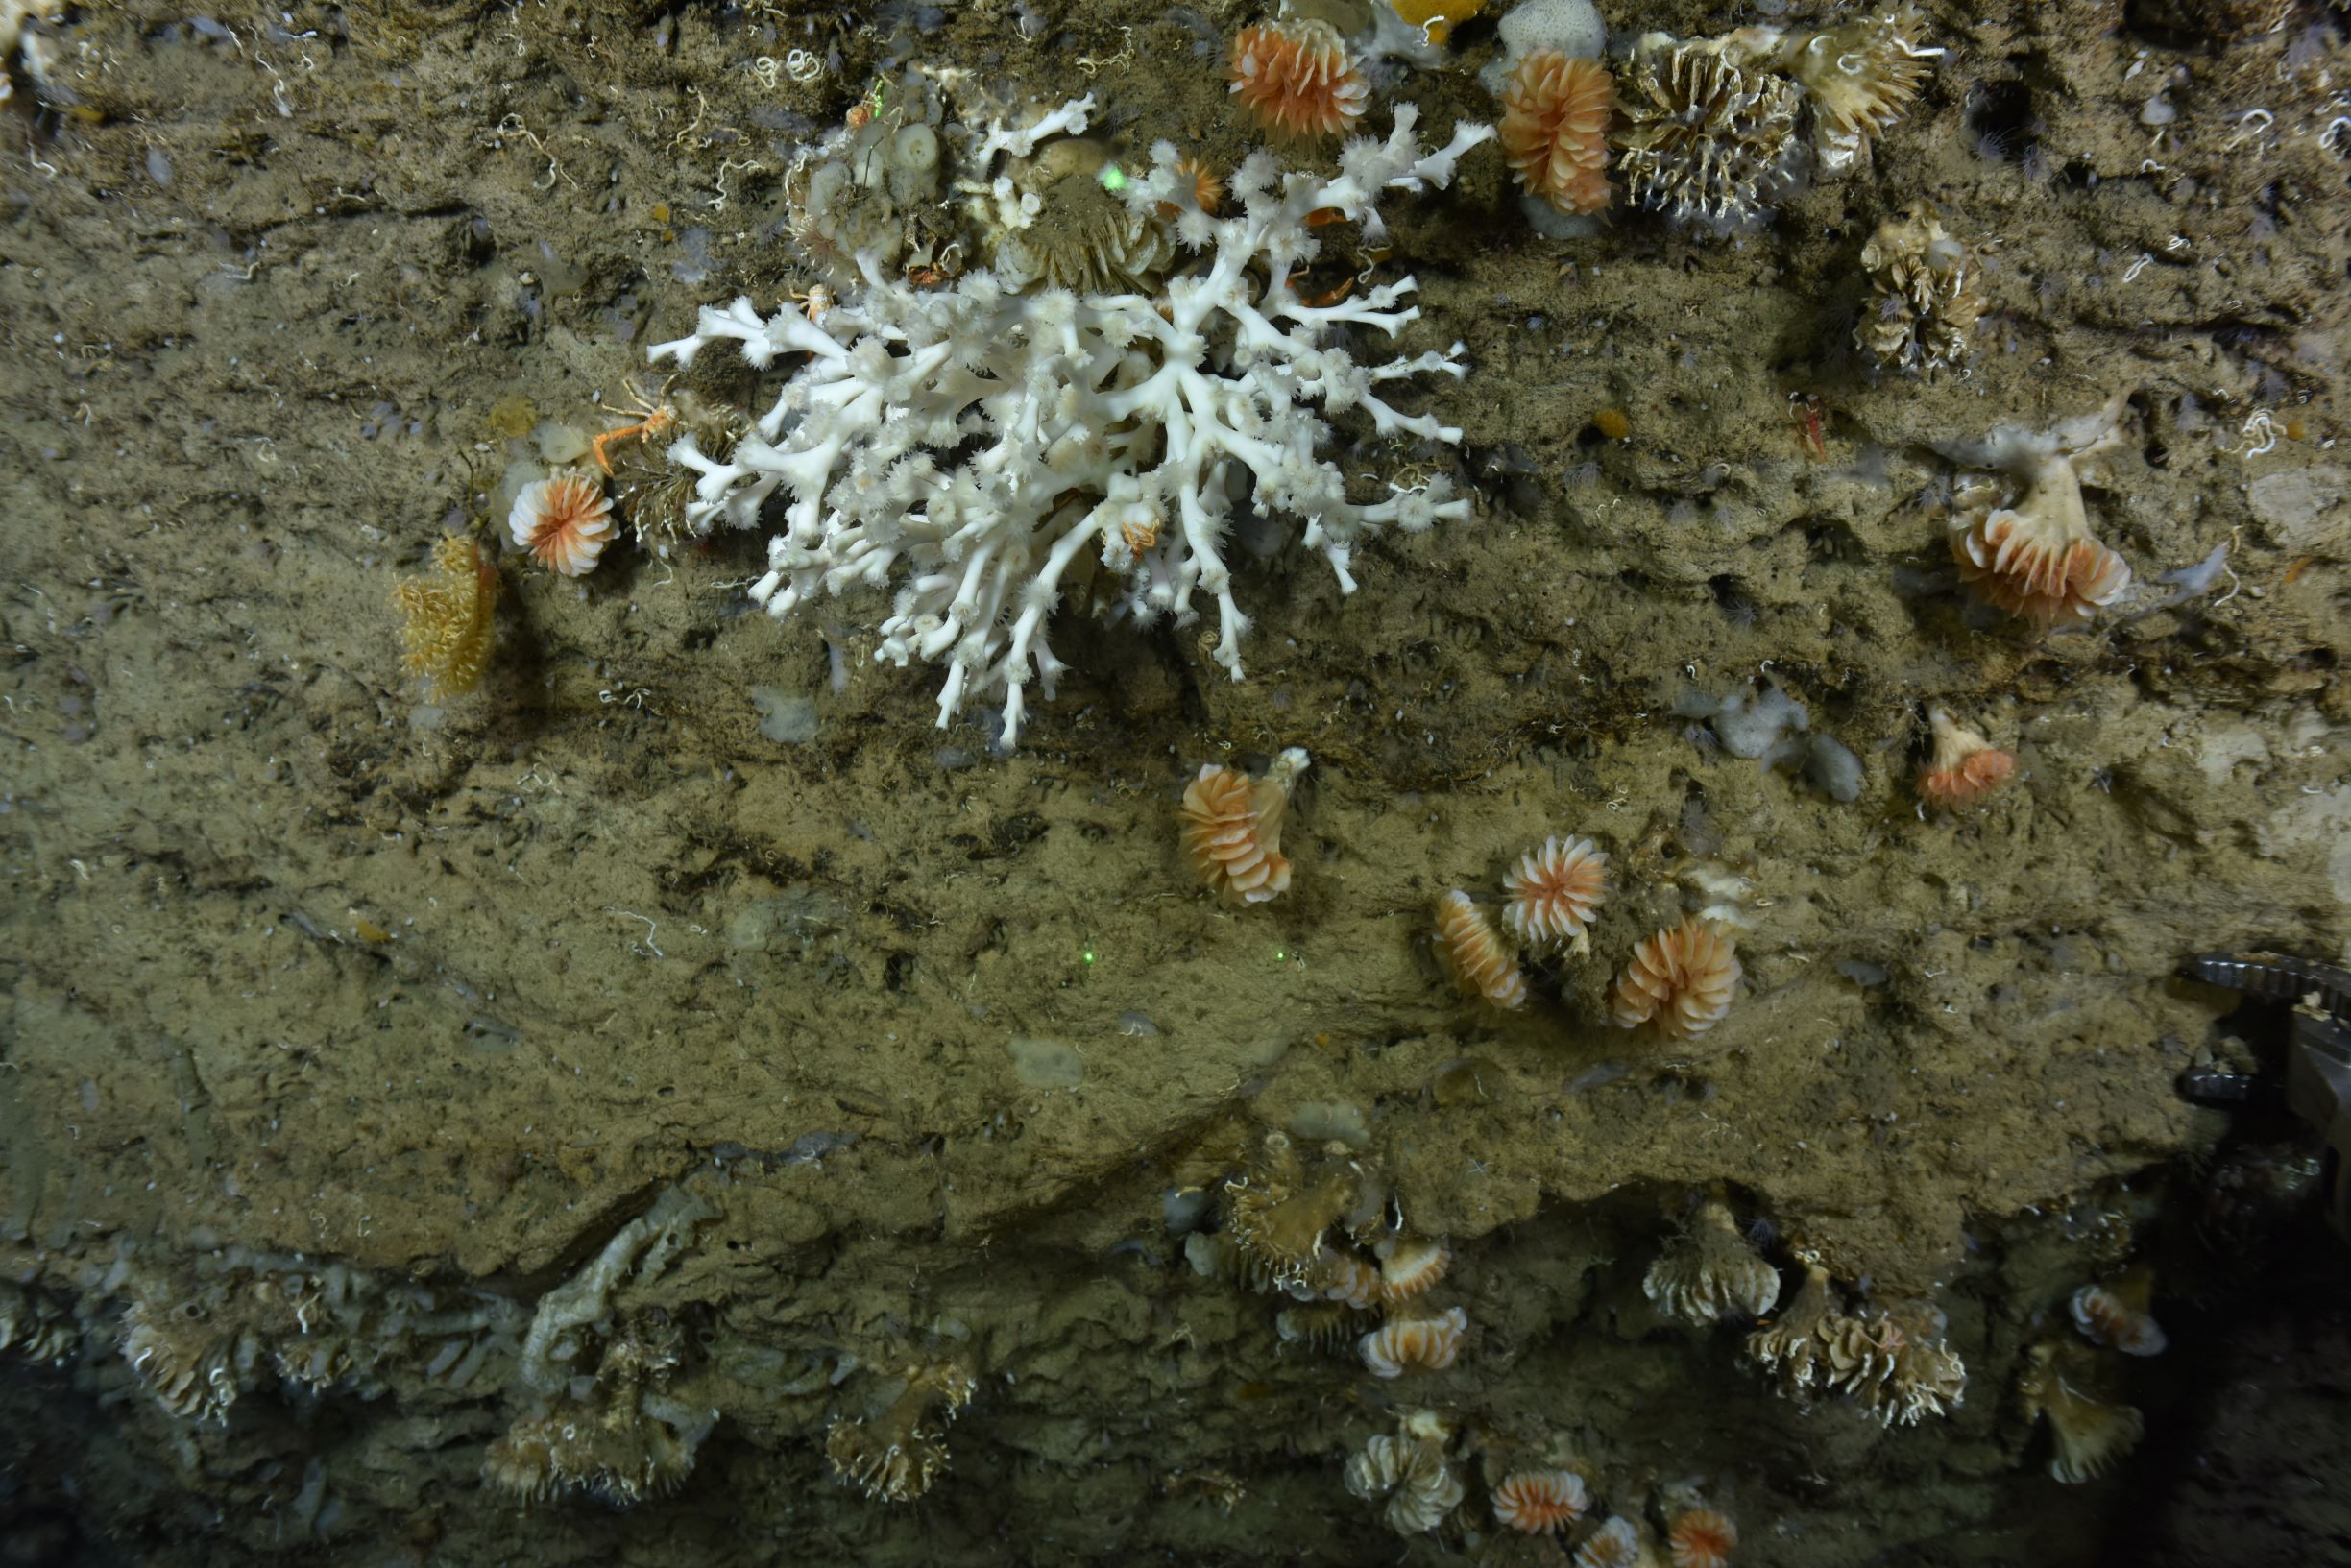 The stony coral, Lophelia pertusa.